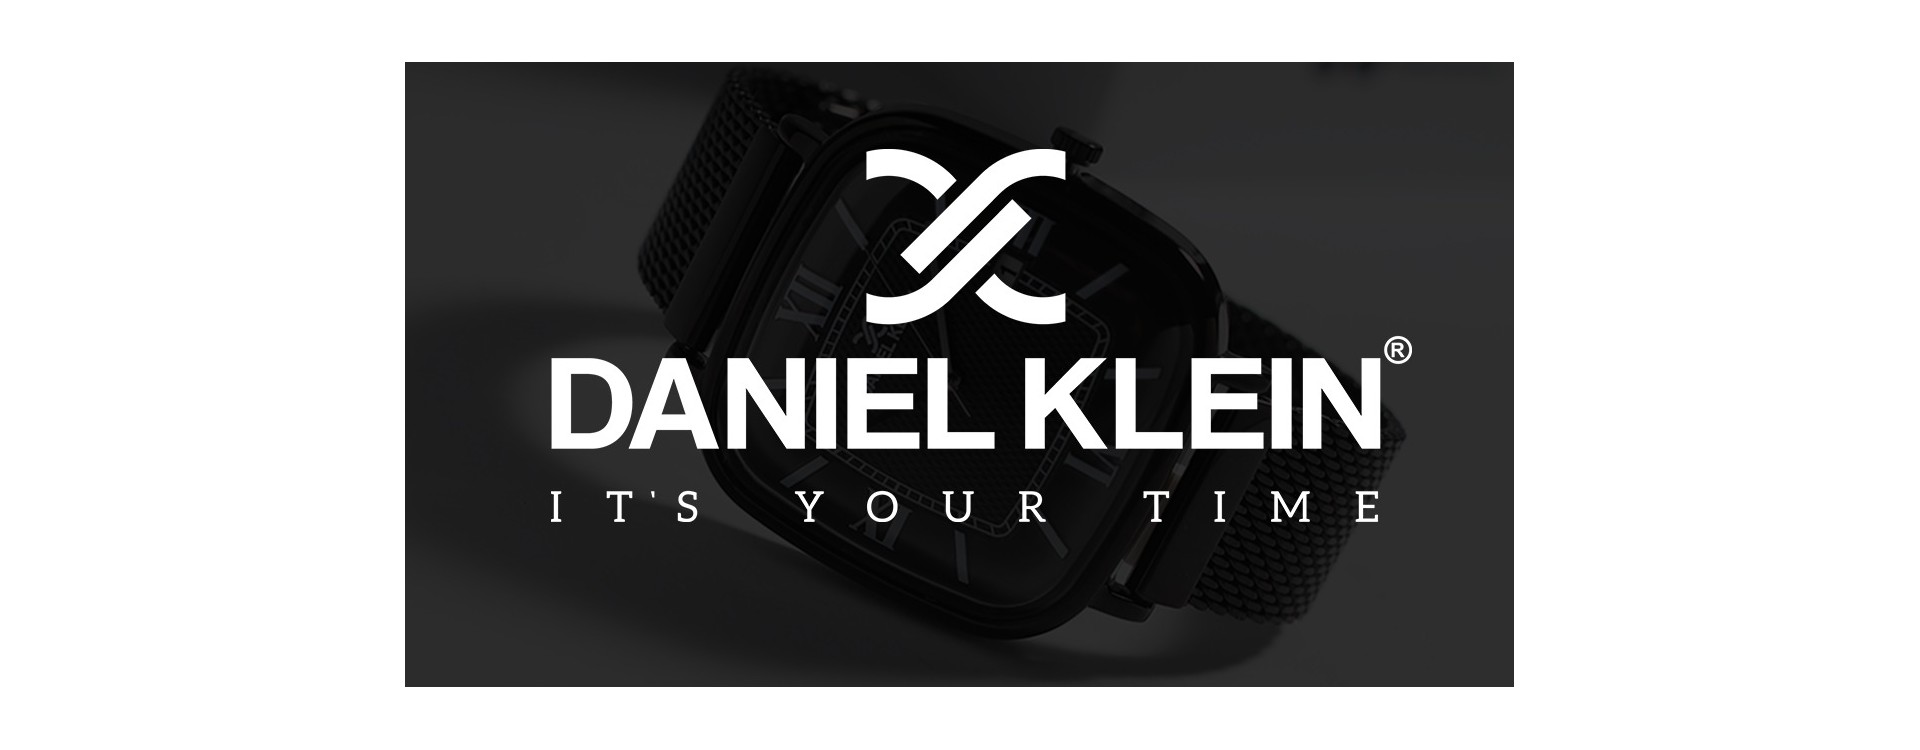 Les innovations technologiques dans les montres Daniel Klein